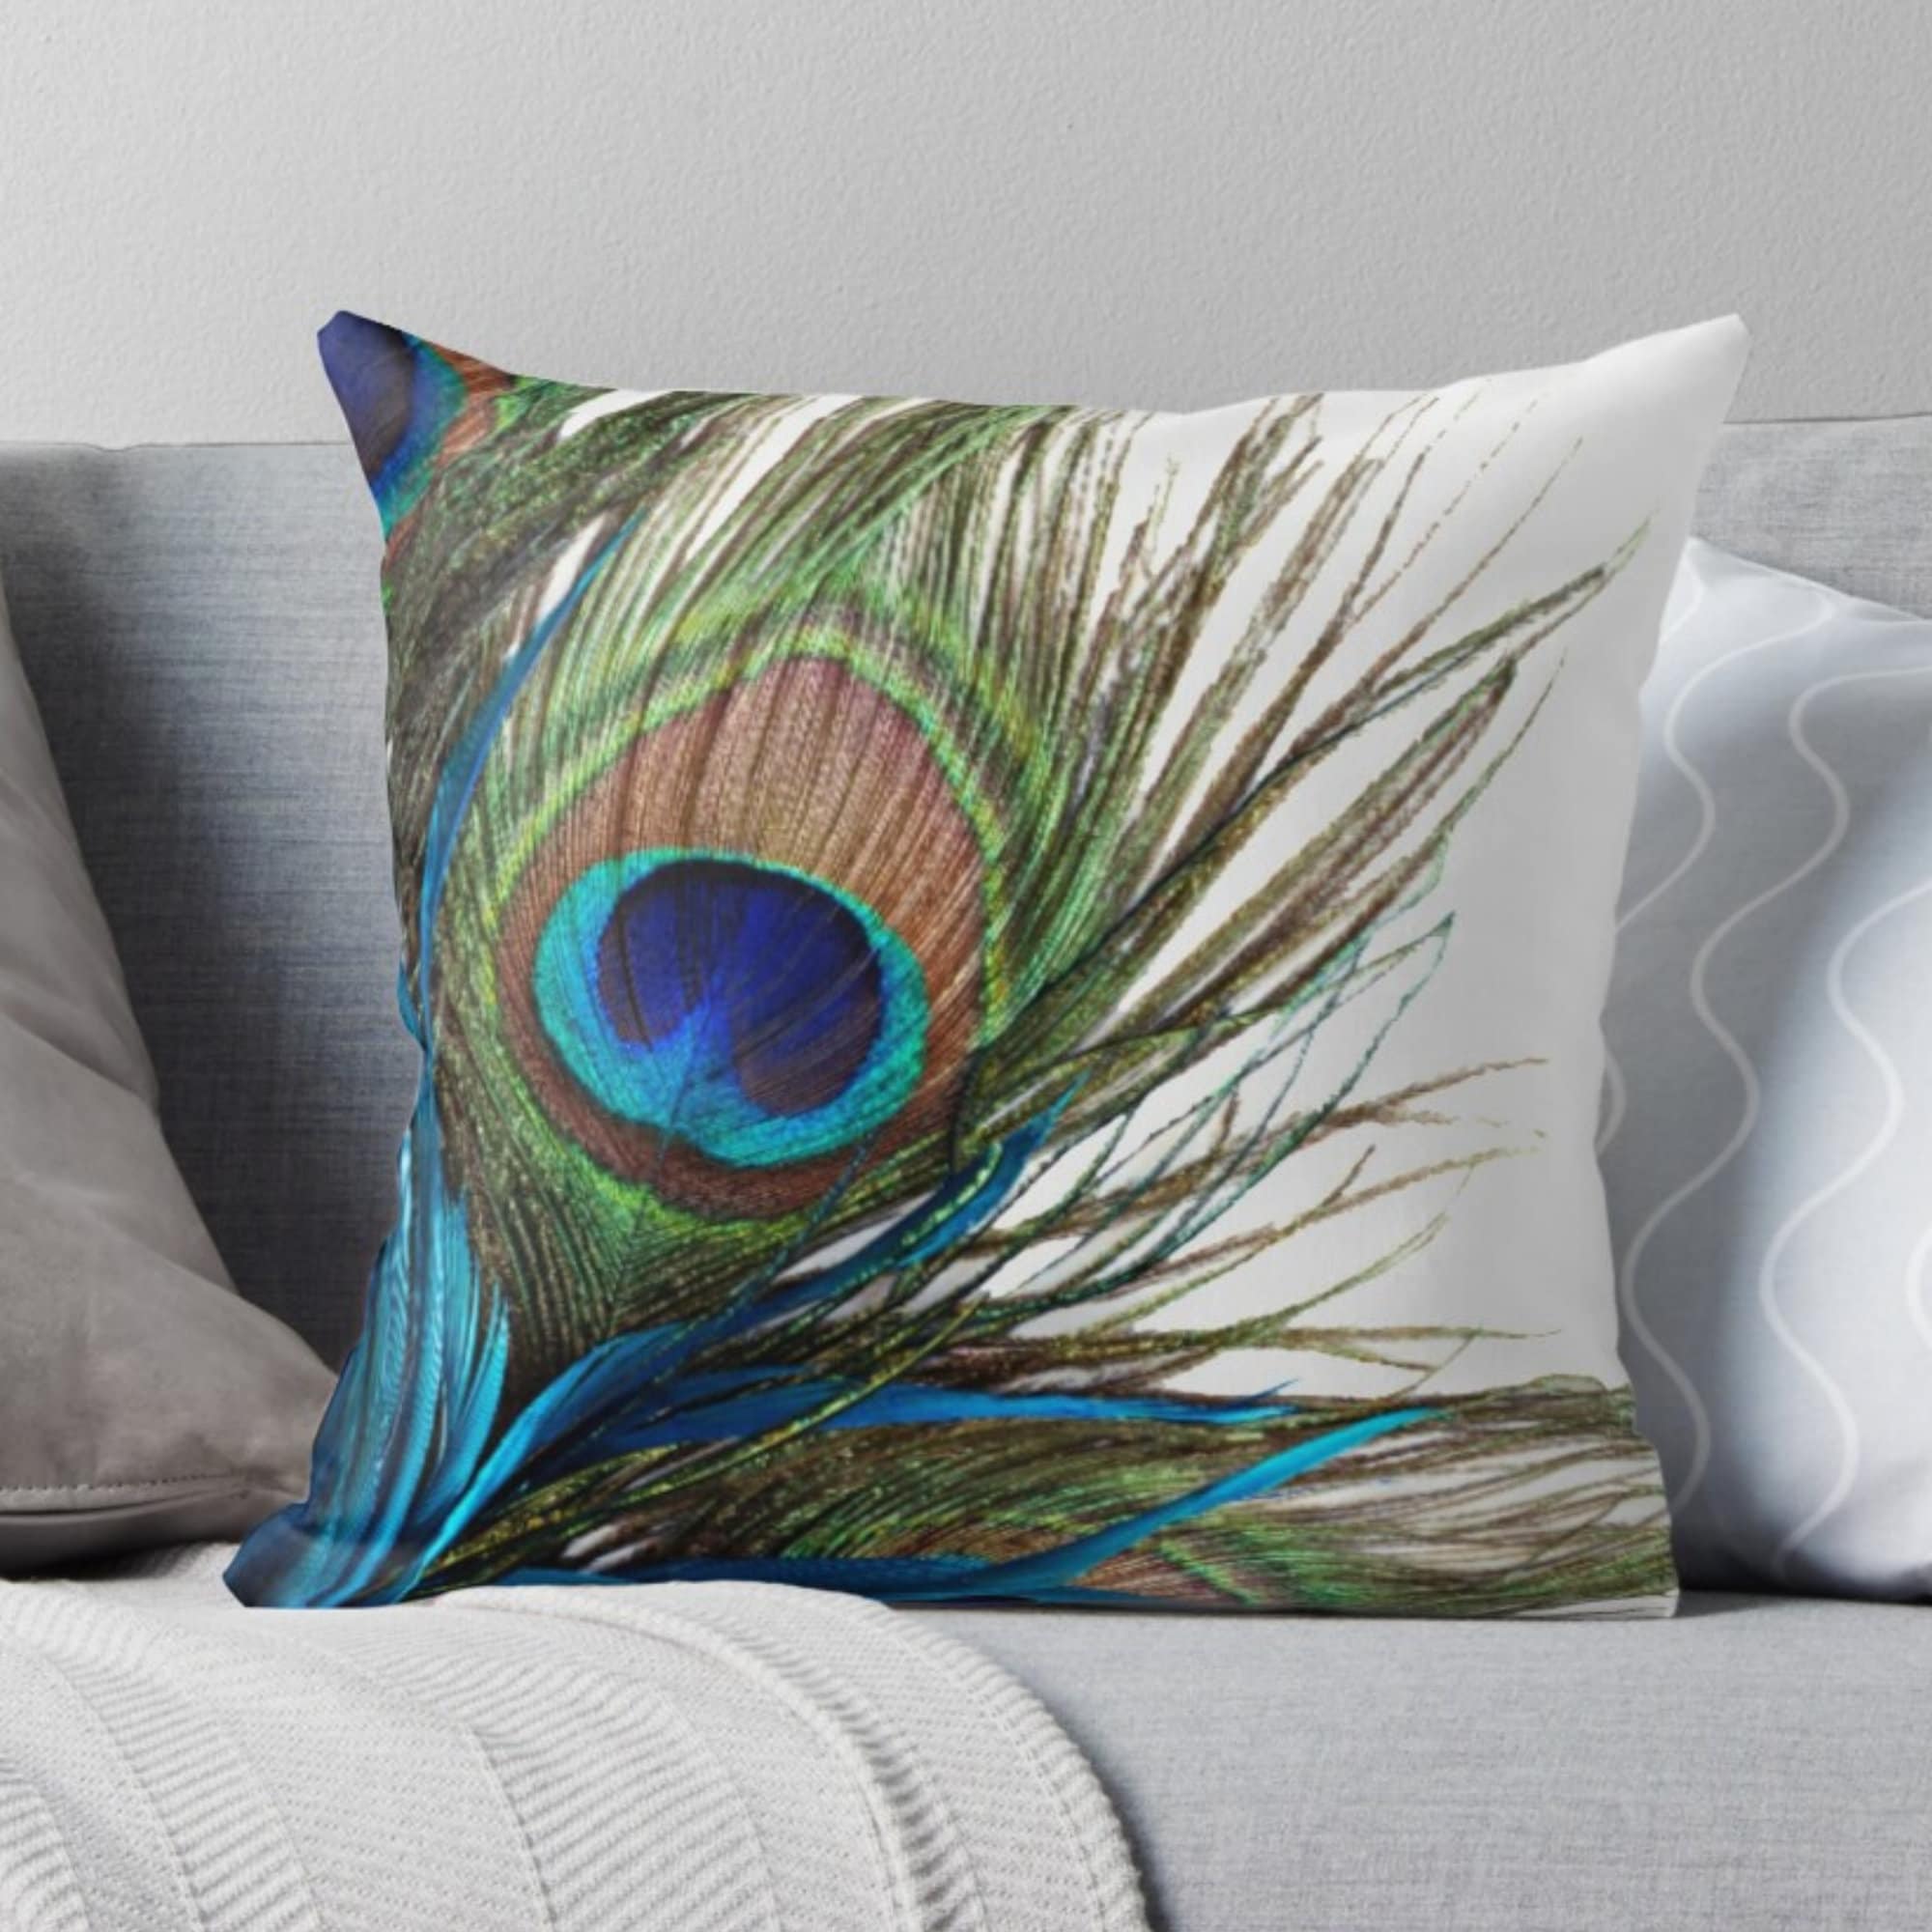 Watercolor Peacock Cotton Linen Pillow Case Sofa Cushion Cover Home Decor 